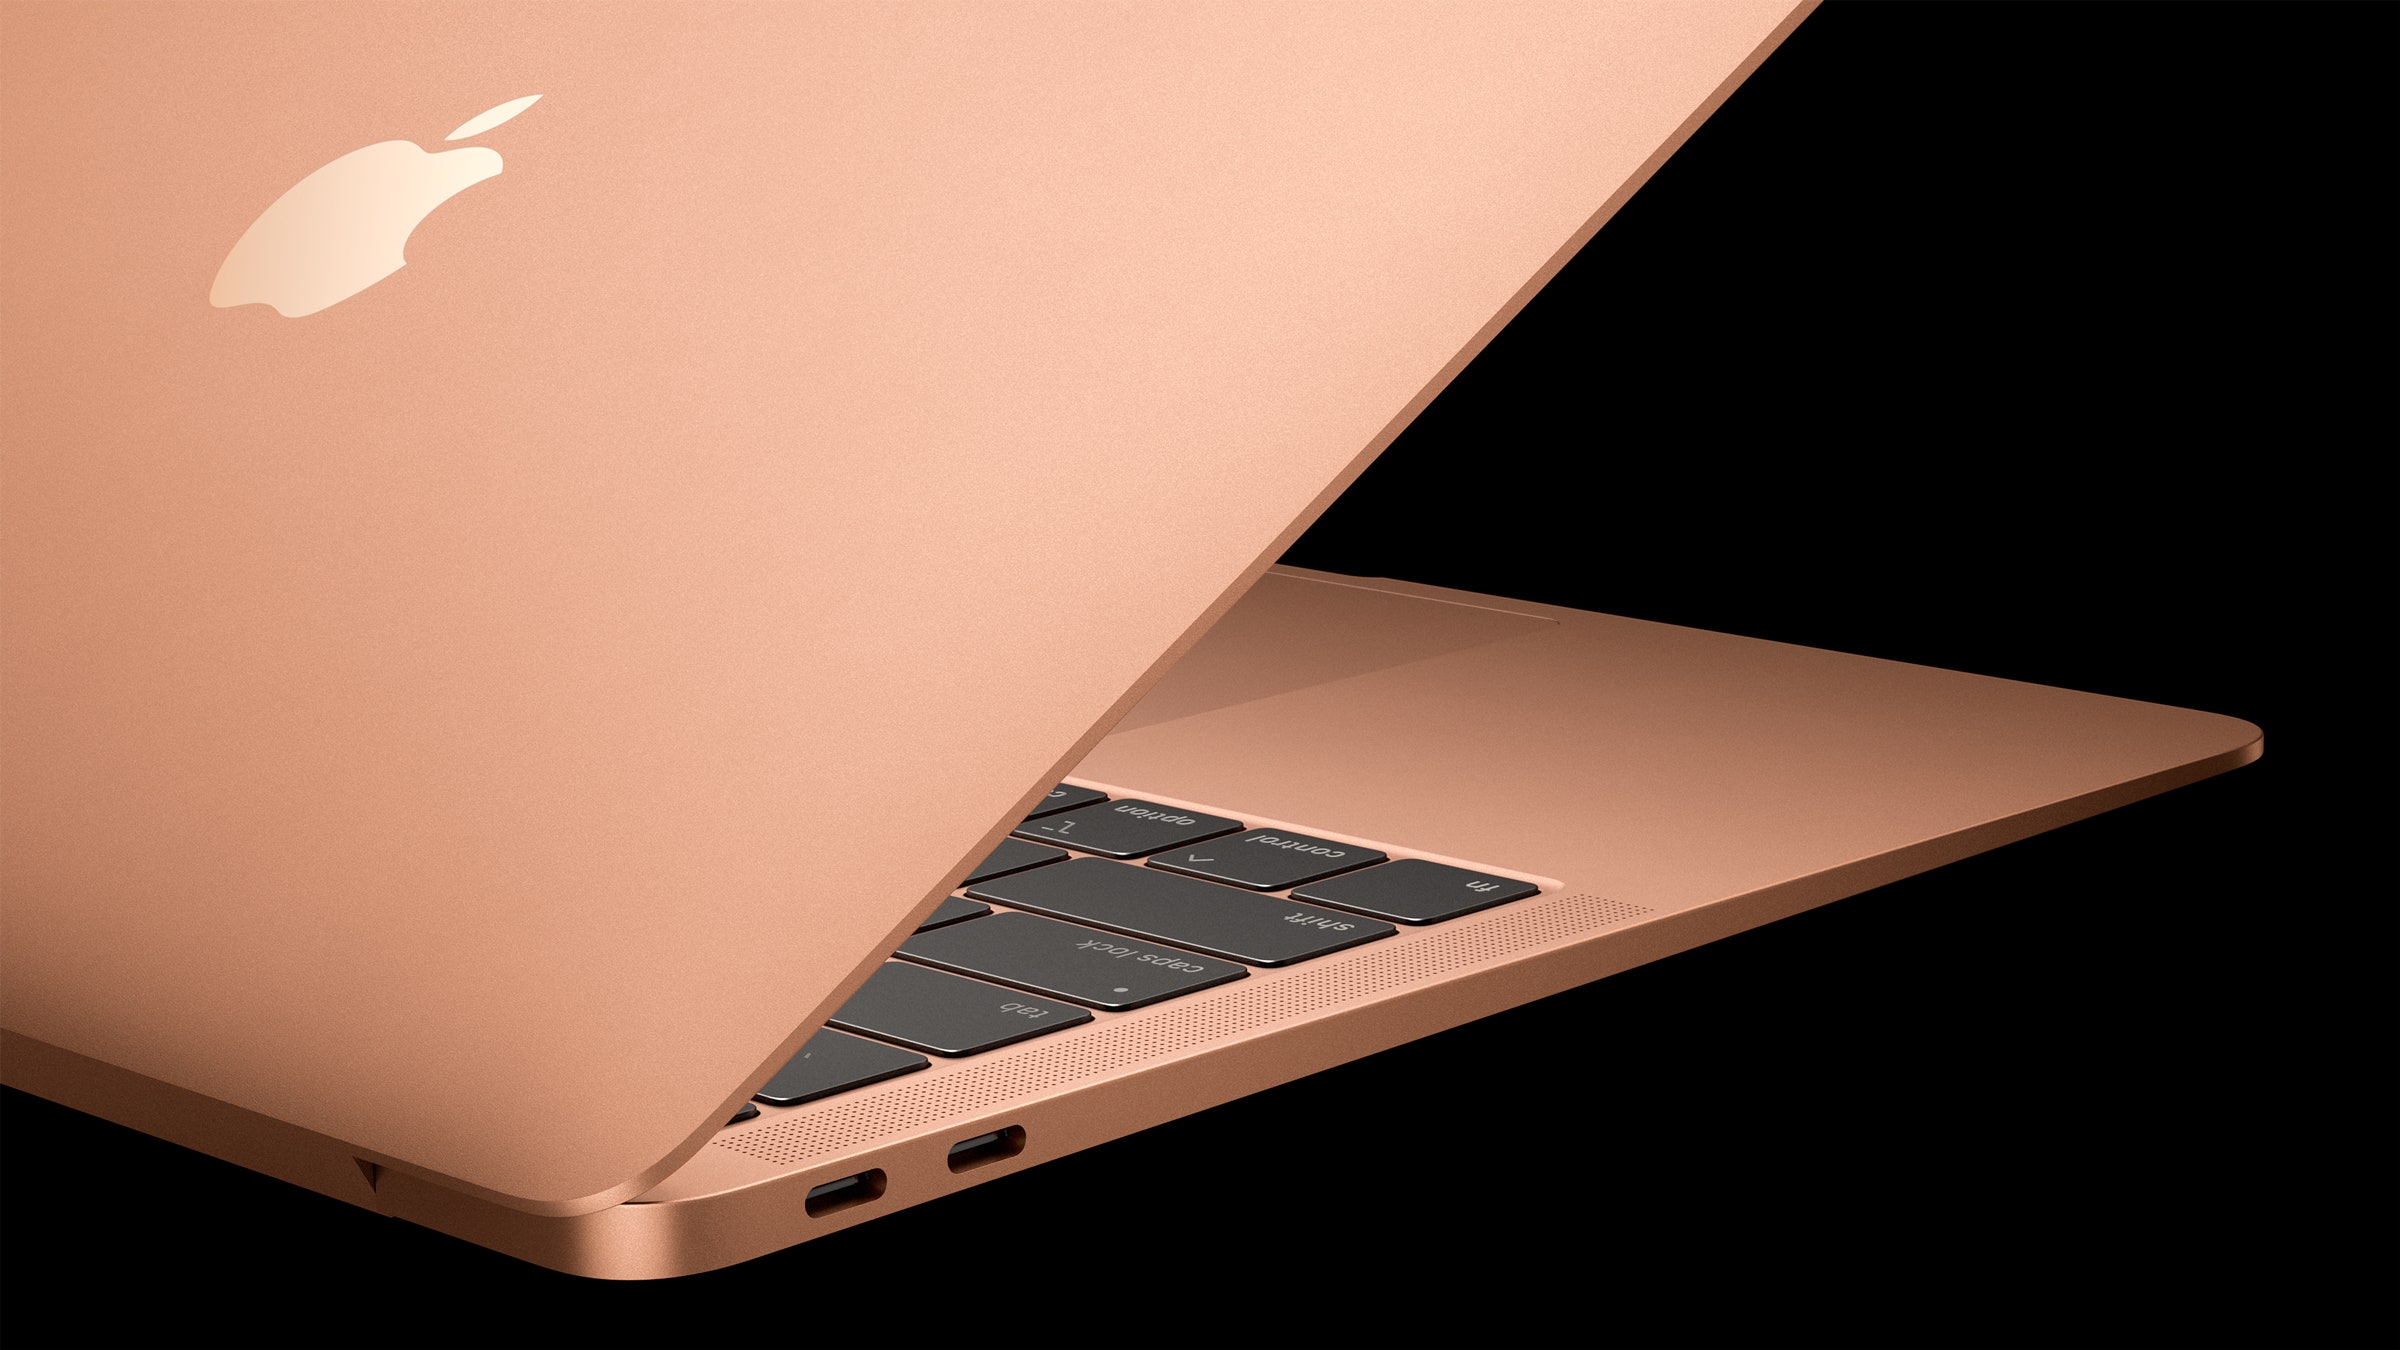 ARM Tabanlı 12 inç MacBook Air Özellikleri ve Fiyatı Sızdırıldı - Technopat